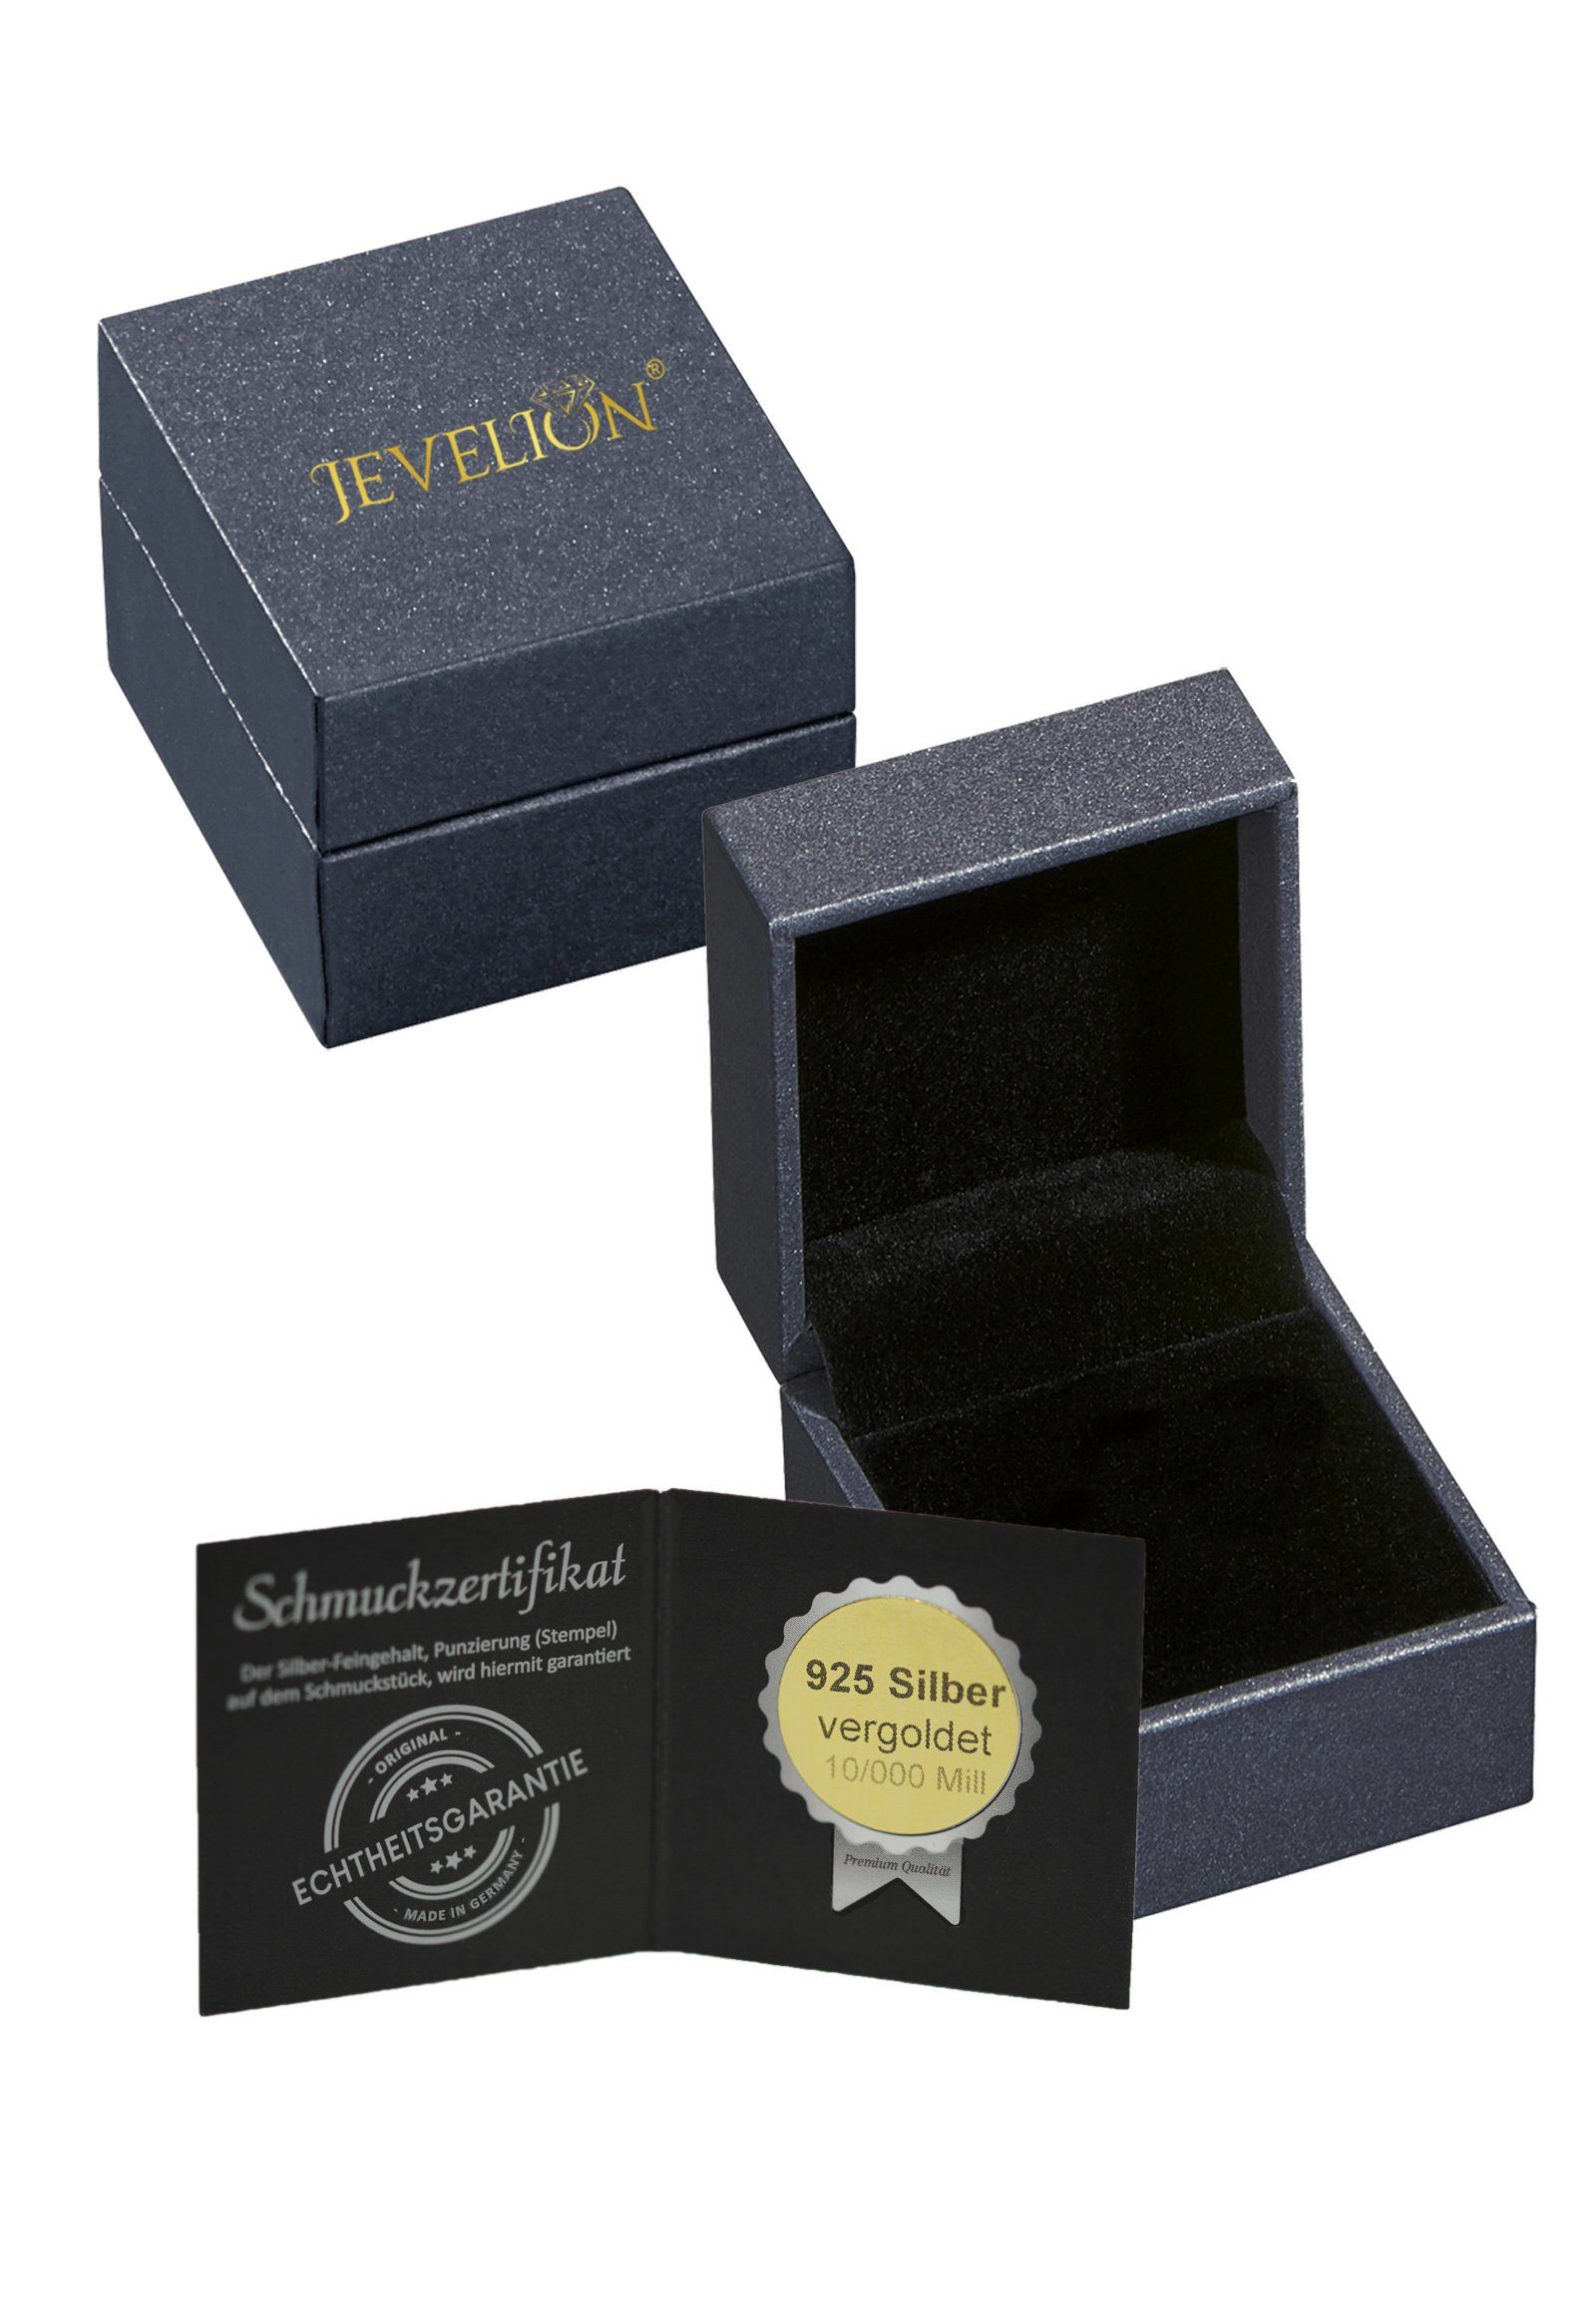 Silber Germany Made Kettenanhänger JEVELION in (Herzschmuck, Anhänger vergoldet - KETTE MIT Herz Schmuckanhänger für Damen),